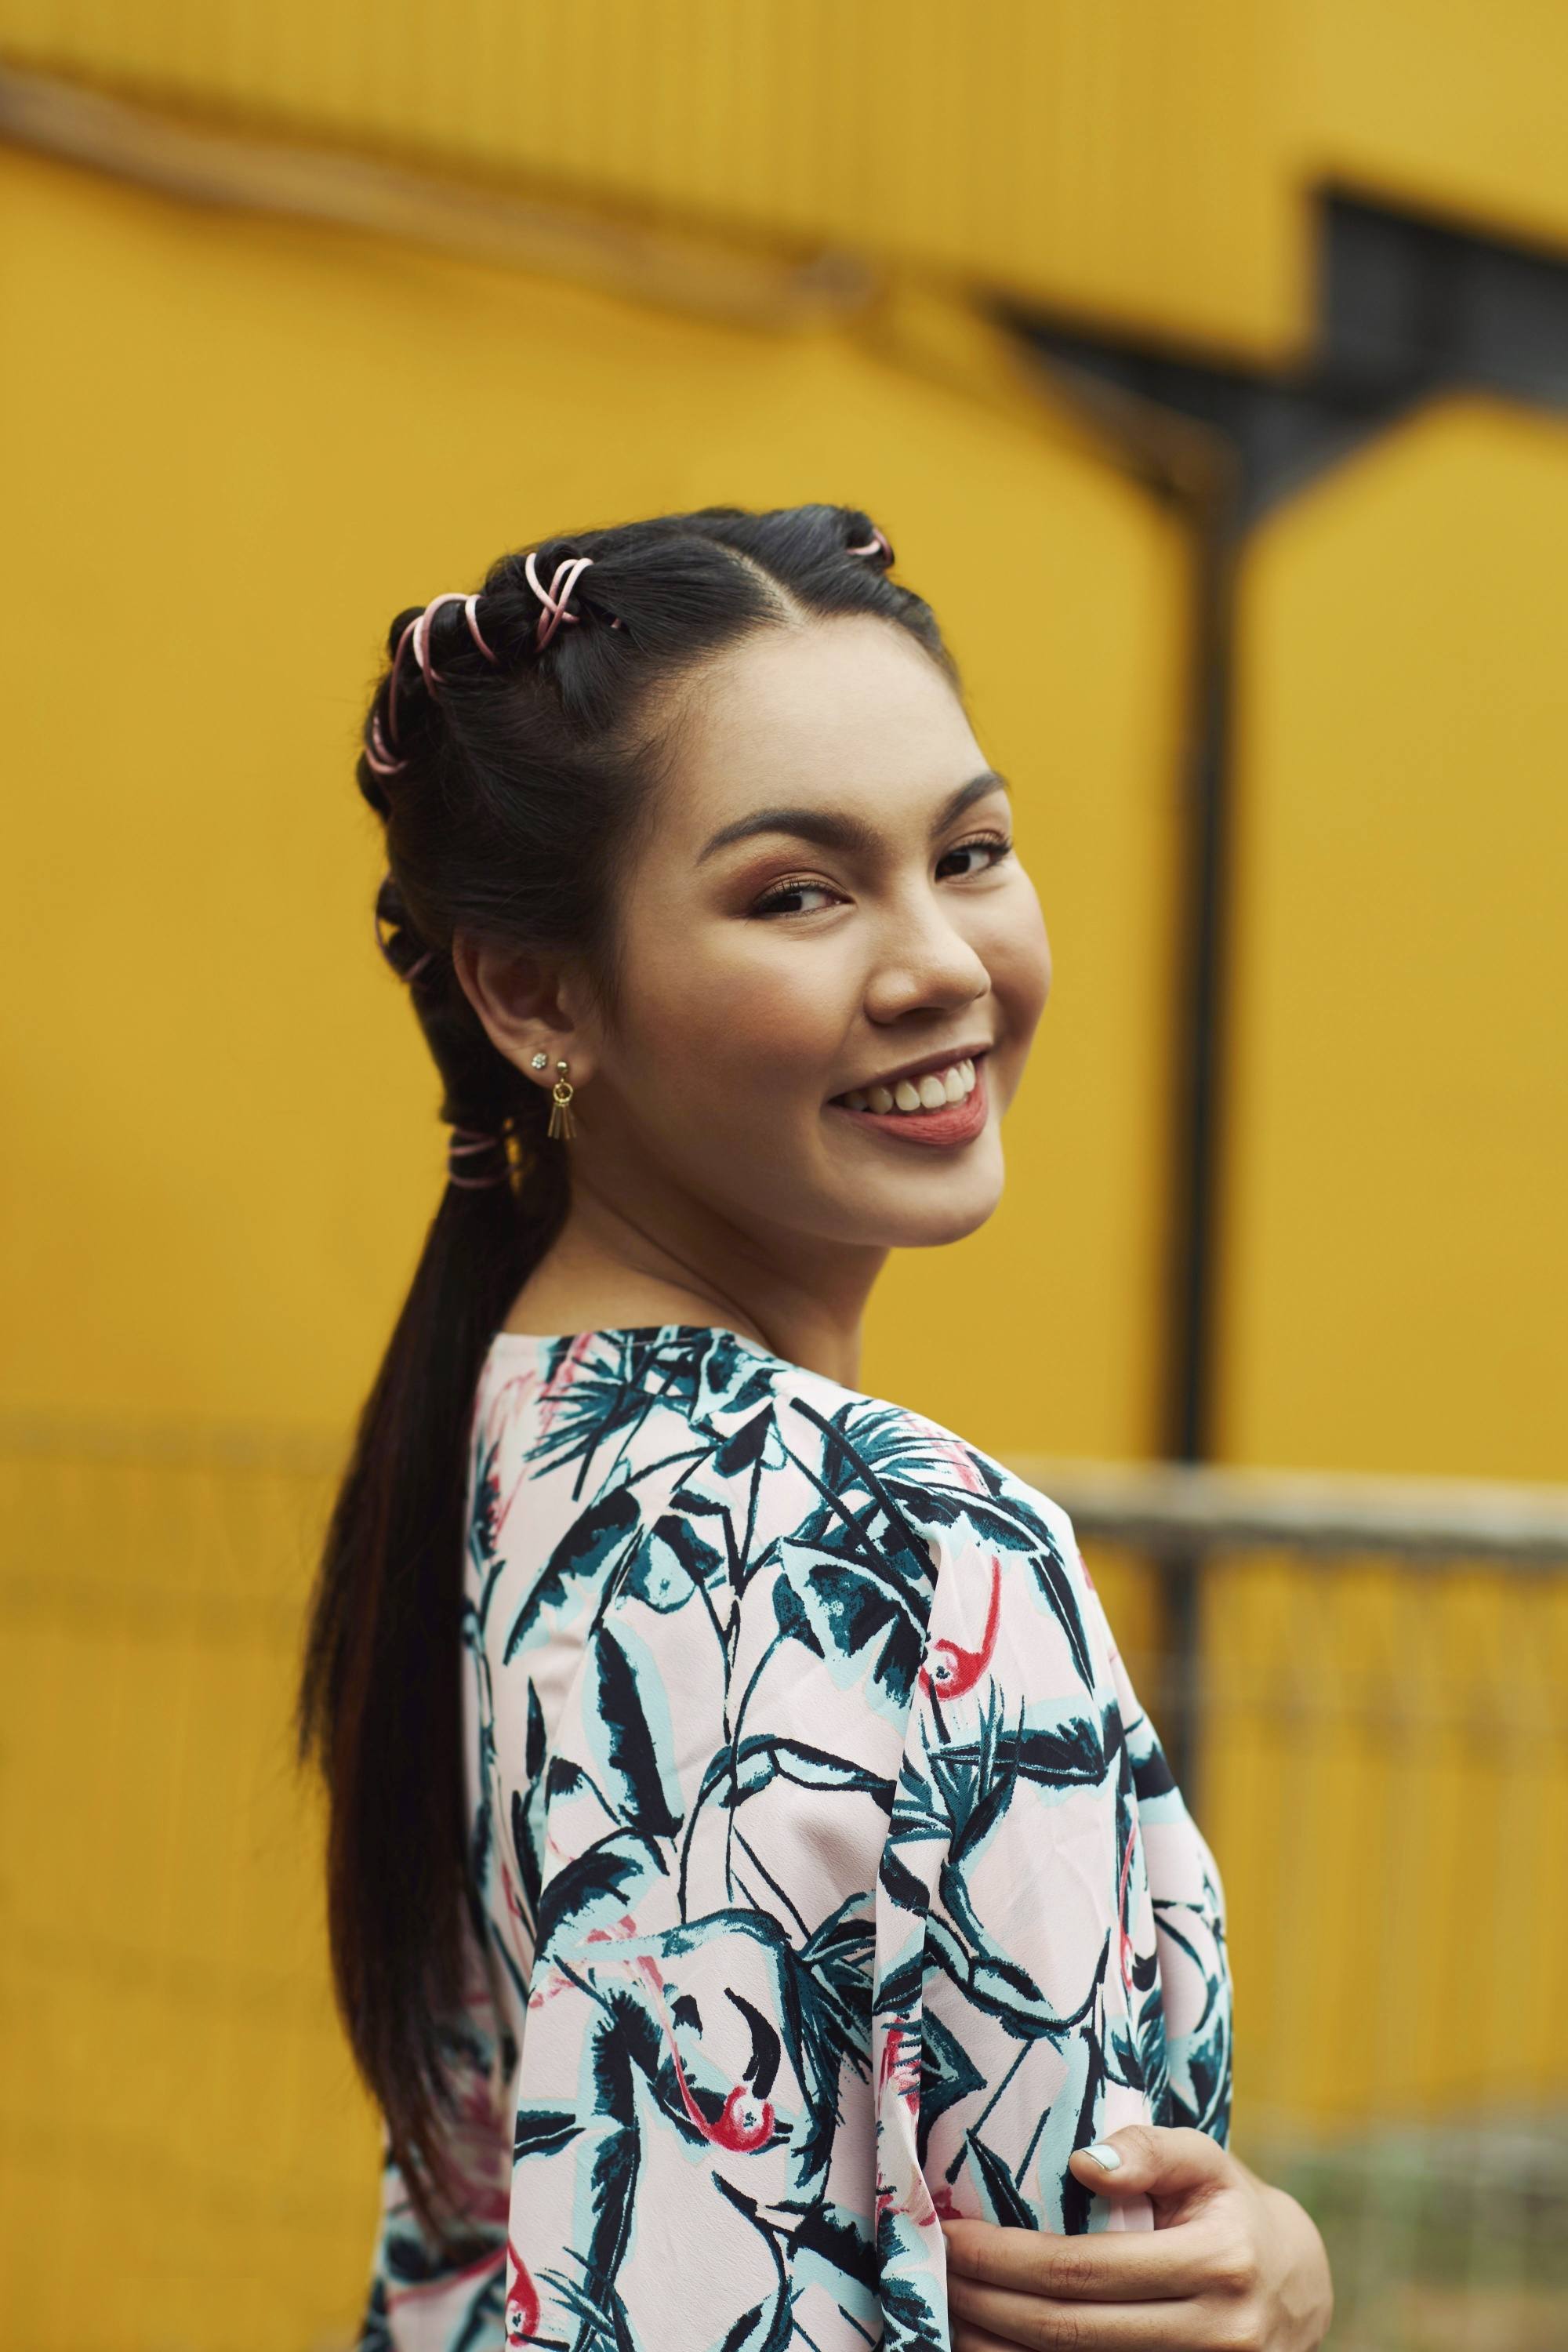 Femme asiatique aux cheveux longs en tresses de tuyaux portant une robe imprimée